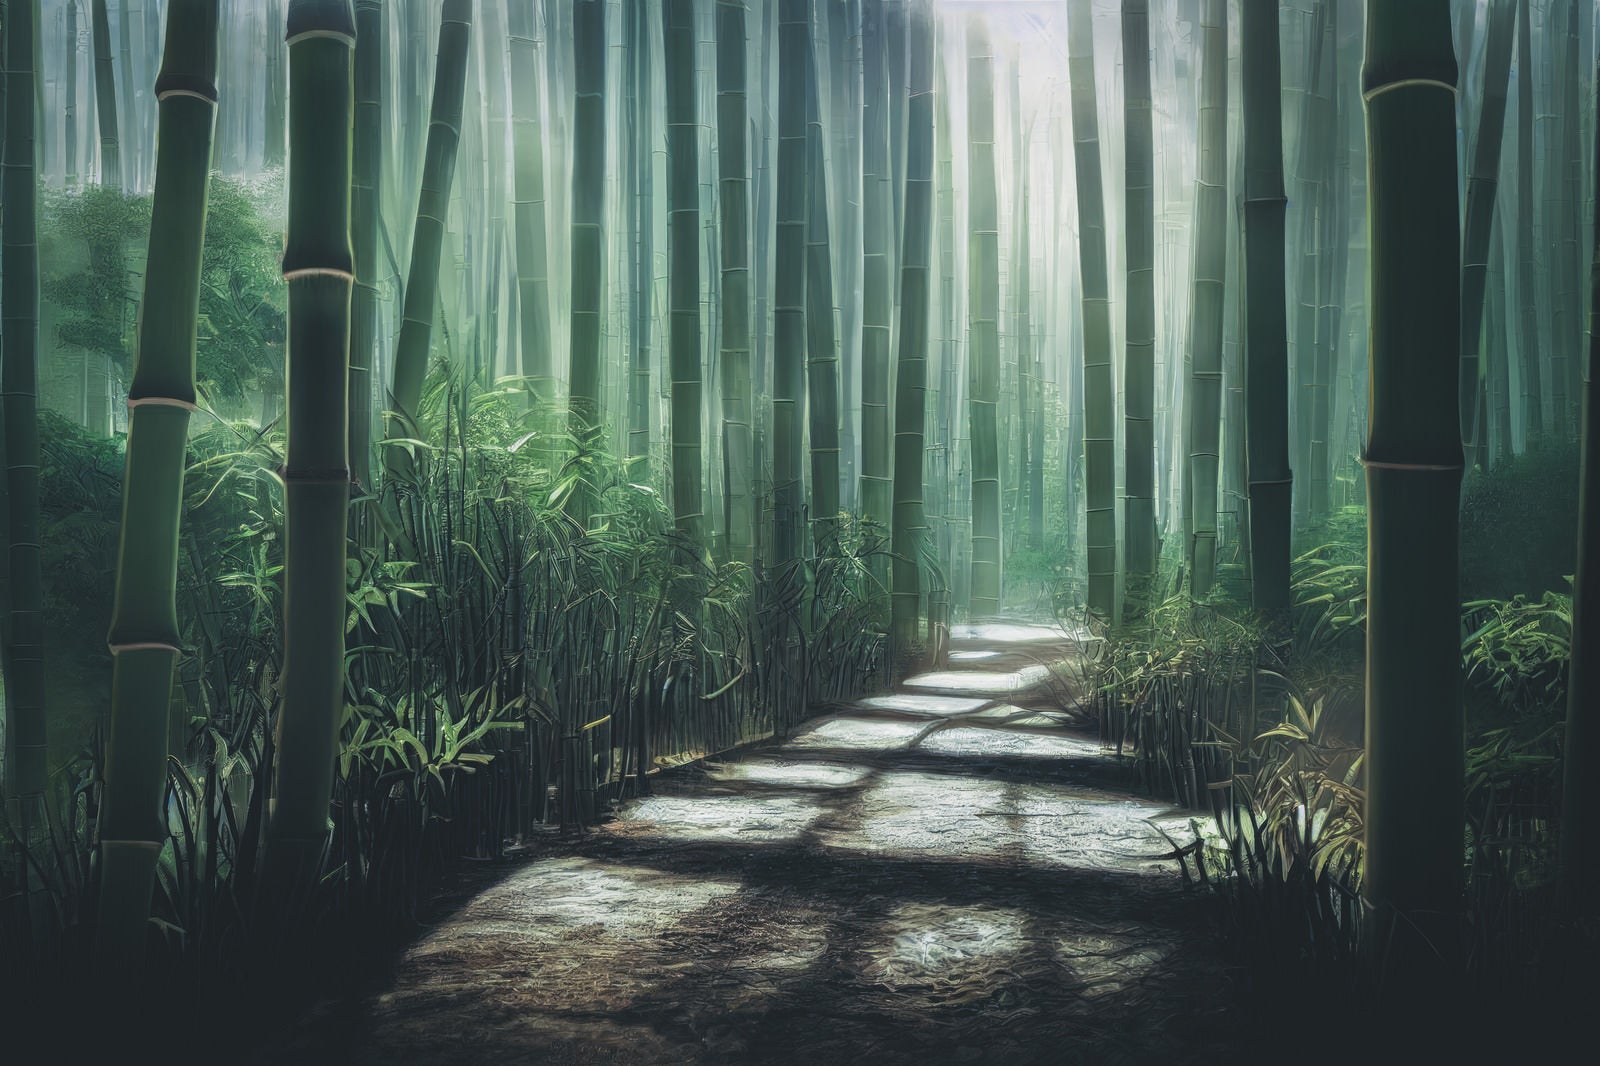 「小道に伸びる竹林の影」の写真